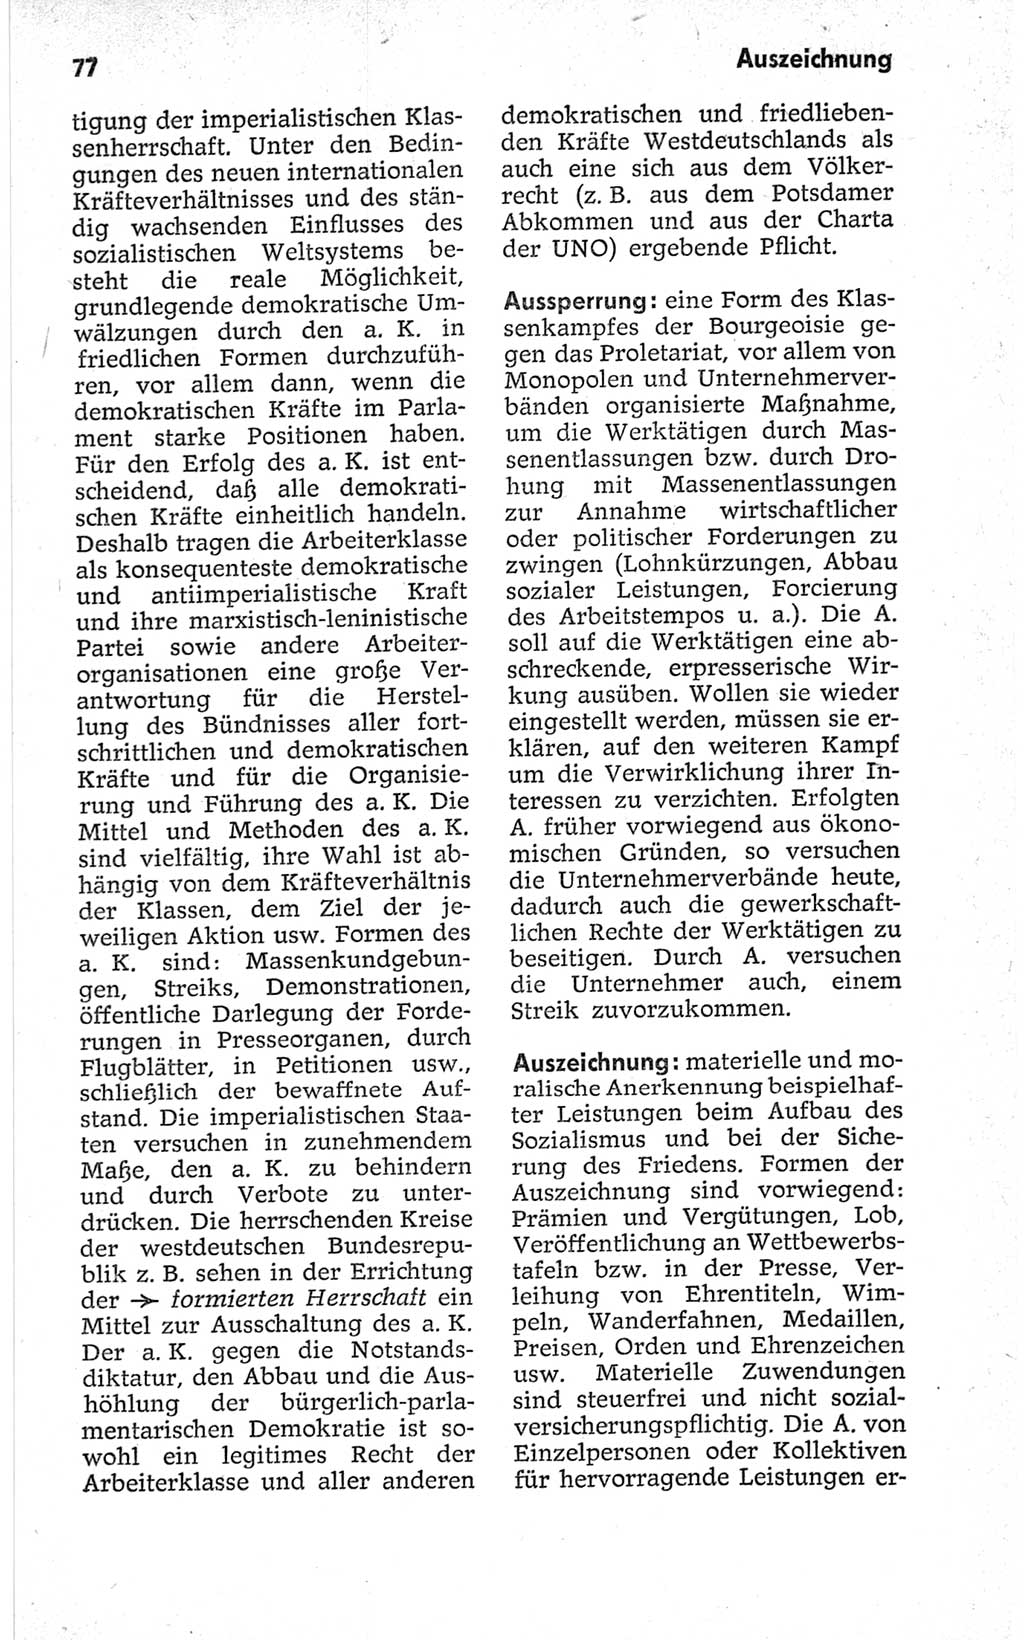 Kleines politisches Wörterbuch [Deutsche Demokratische Republik (DDR)] 1967, Seite 77 (Kl. pol. Wb. DDR 1967, S. 77)